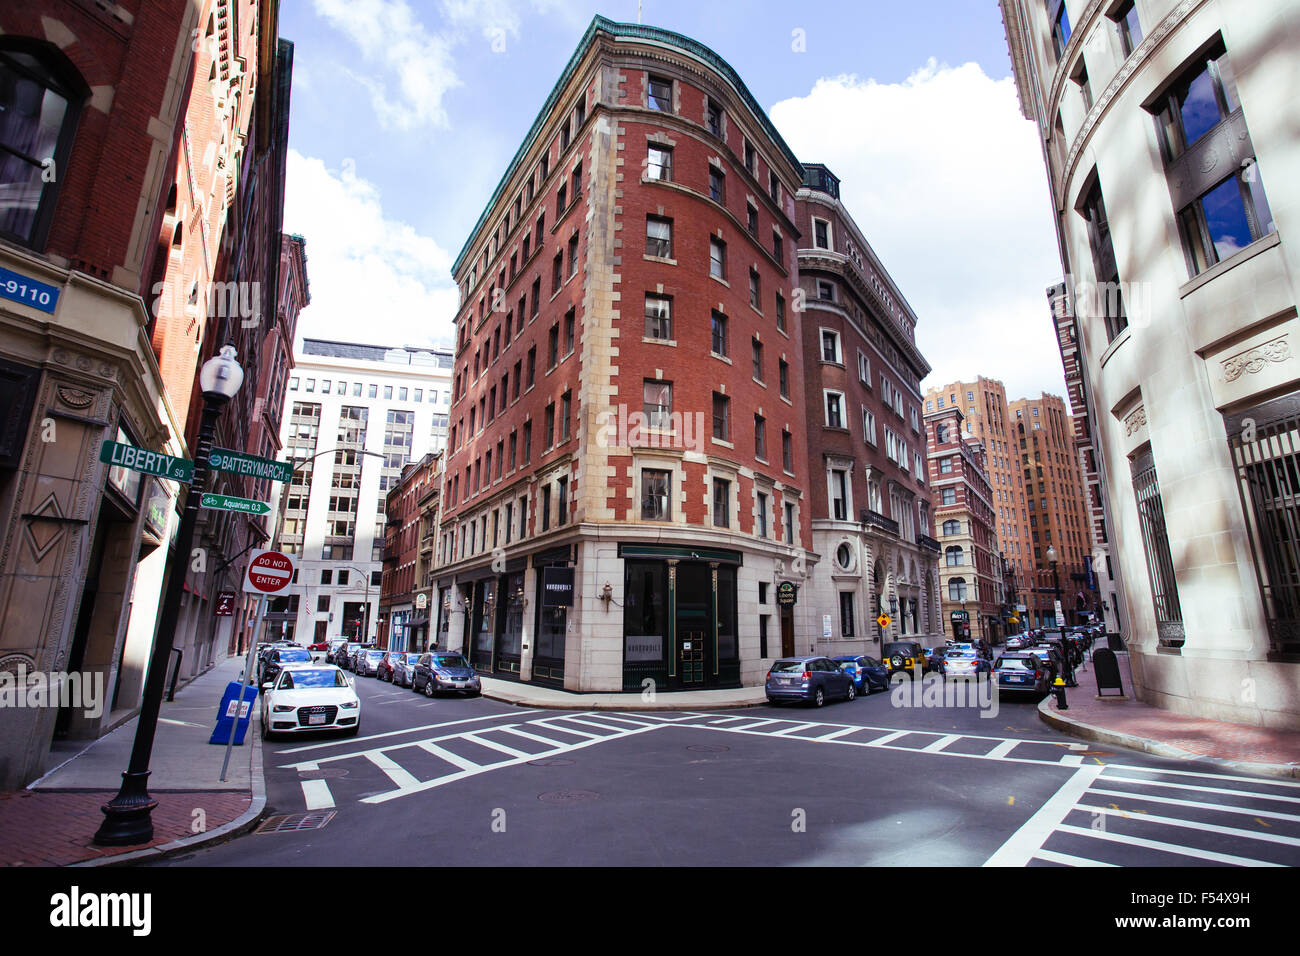 Boston Downtown edificio de ladrillo rojo de la calle Foto de stock